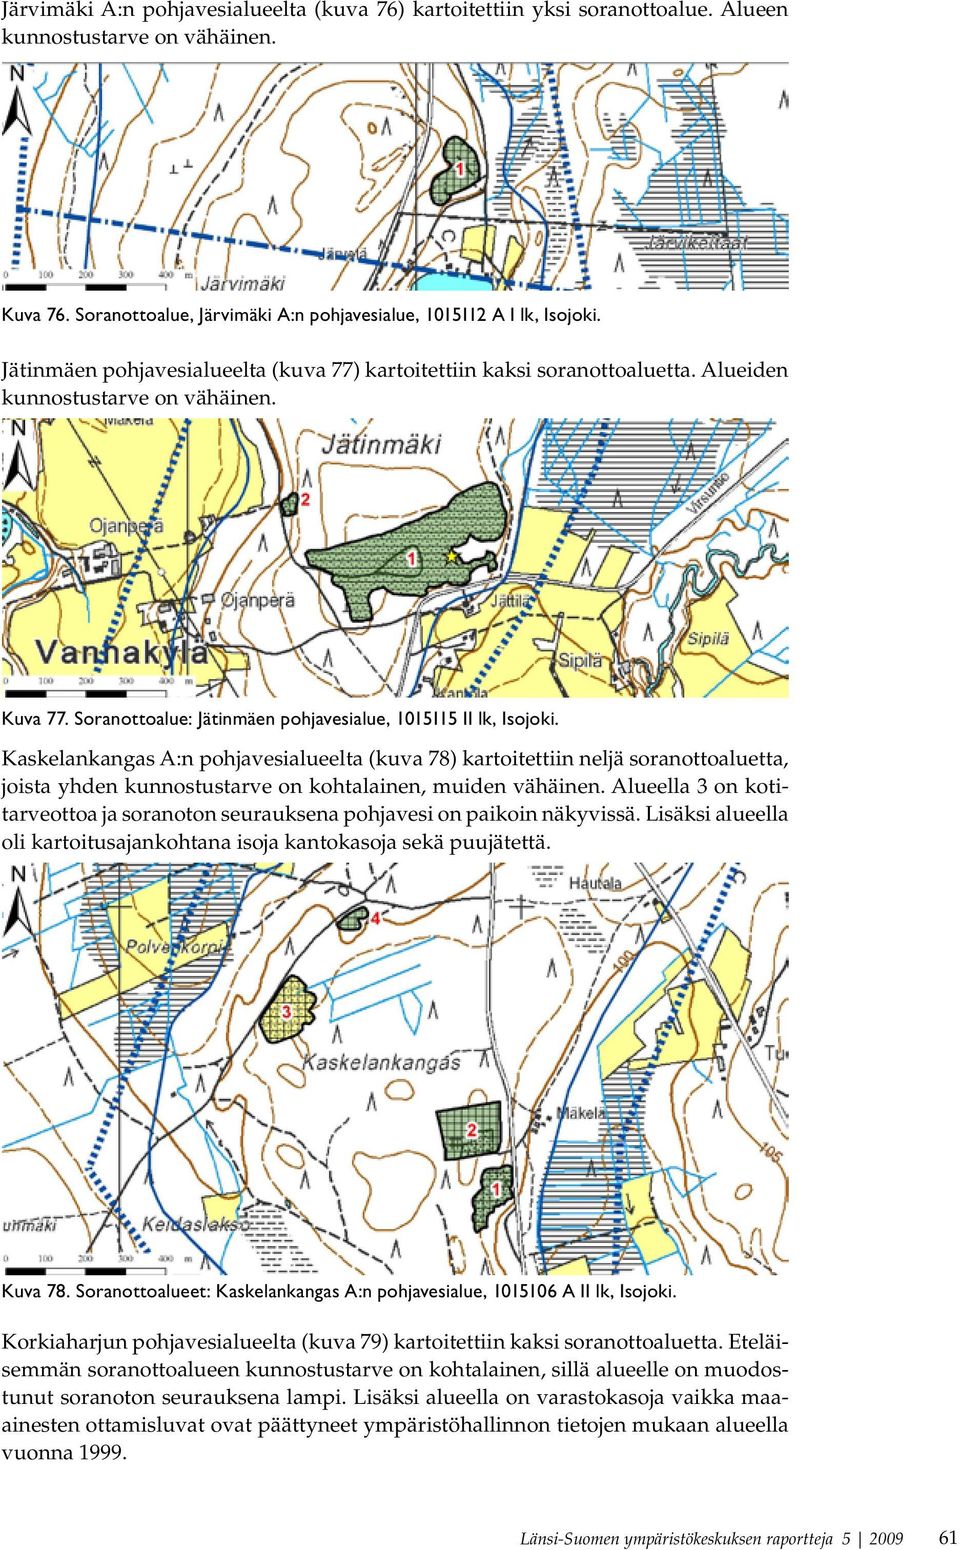 Kaskelankangas A:n pohjavesialueelta (kuva 78) kartoitettiin neljä soranottoaluetta, joista yhden kunnostustarve on kohtalainen, muiden vähäinen.